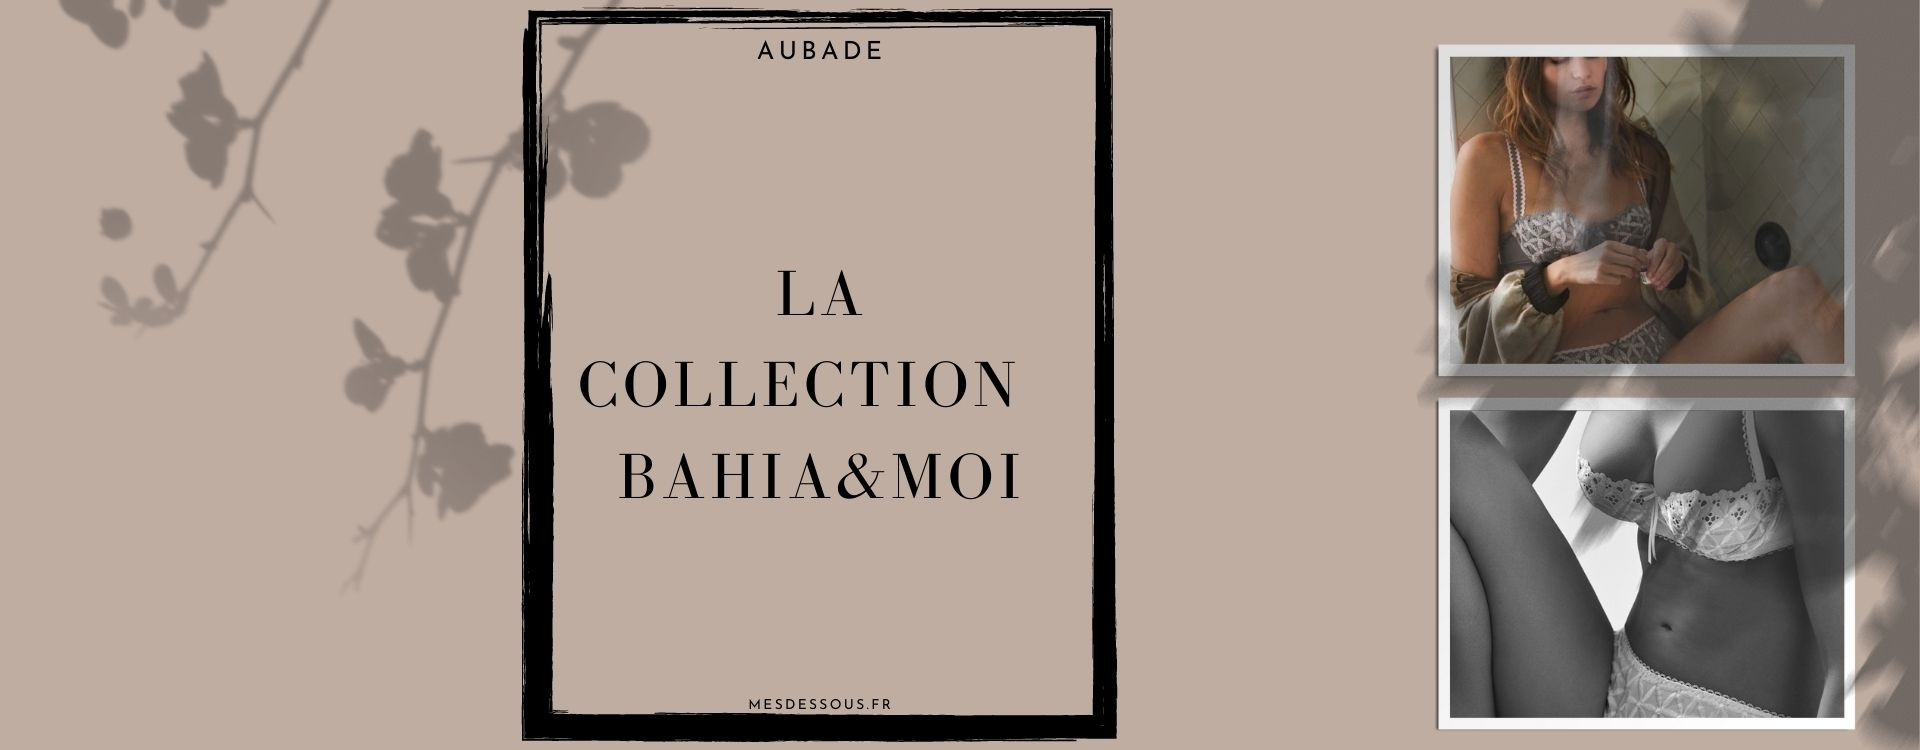 La collection intemporelle Bahia&Moi de la marque Aubade